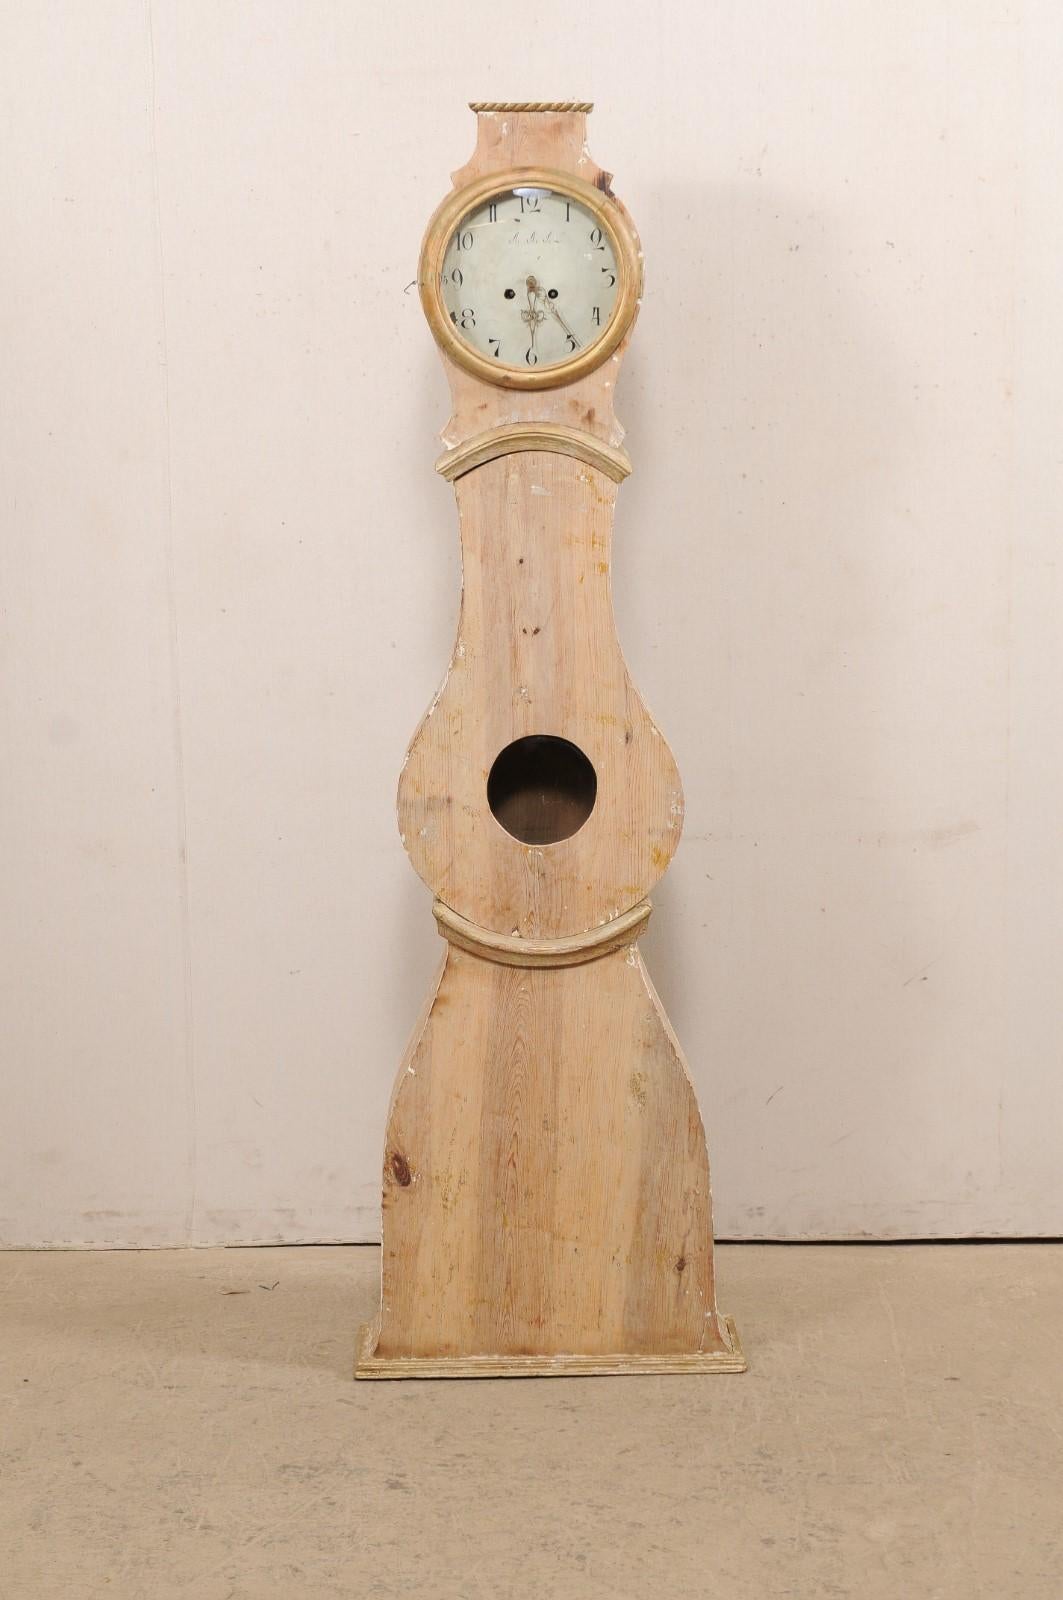 Horloge de parquet suédoise en bois sculpté Mora du 19e siècle. Cette horloge Mora antique de Suède présente un capot supérieur surélevé et aplati, garni d'une corde sculptée ornant sa tête, une porte en forme de goutte d'eau et une partie